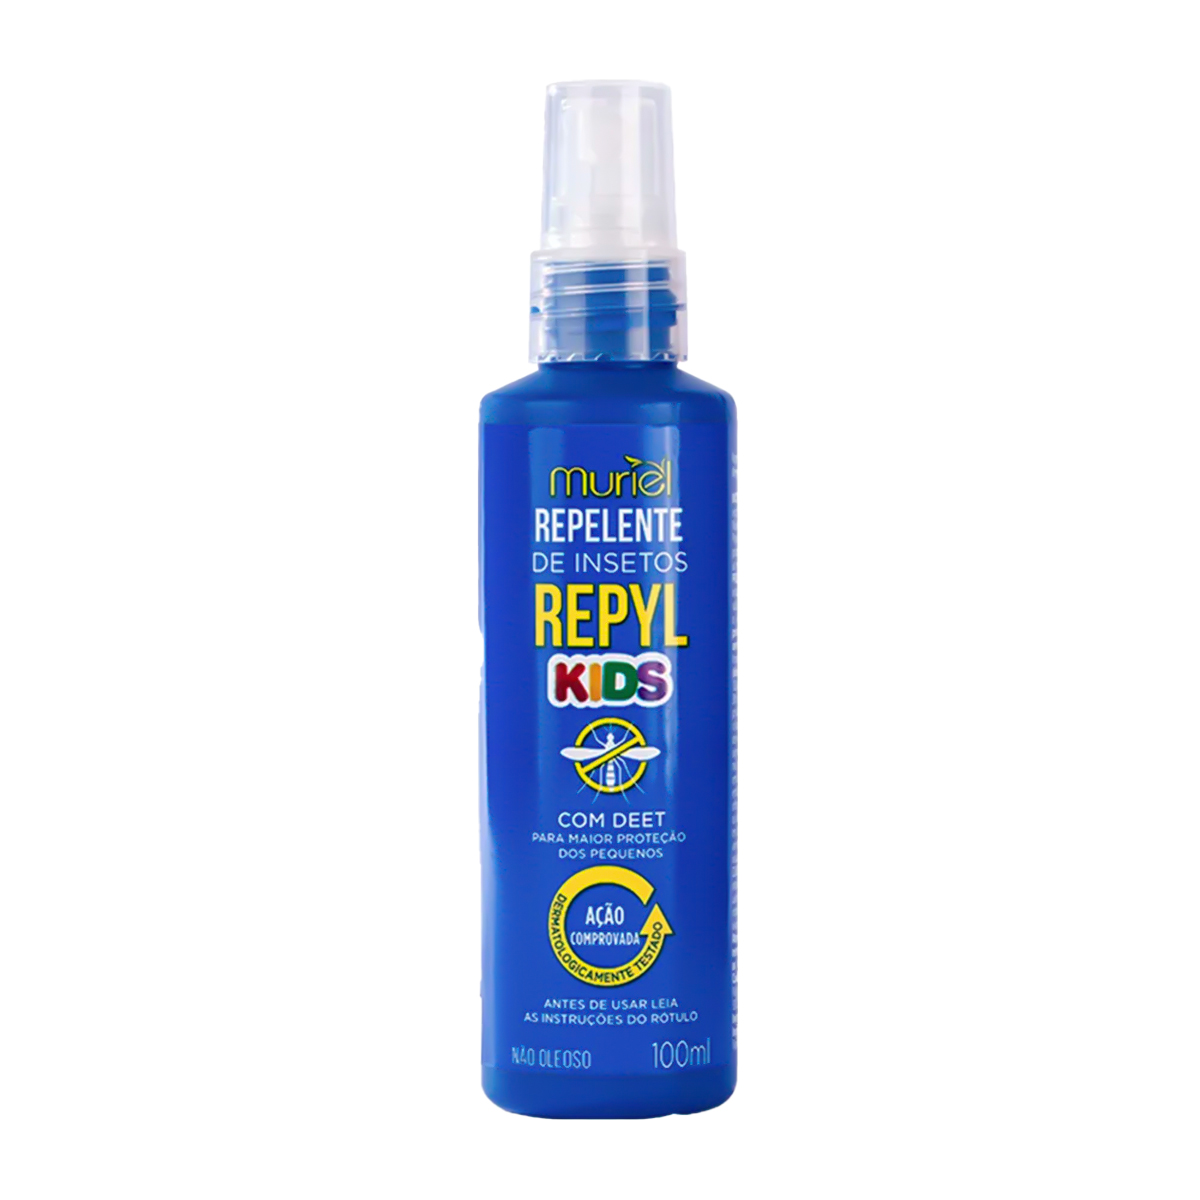 Repelente De Insetos Repyl KIds Spray - 100ml